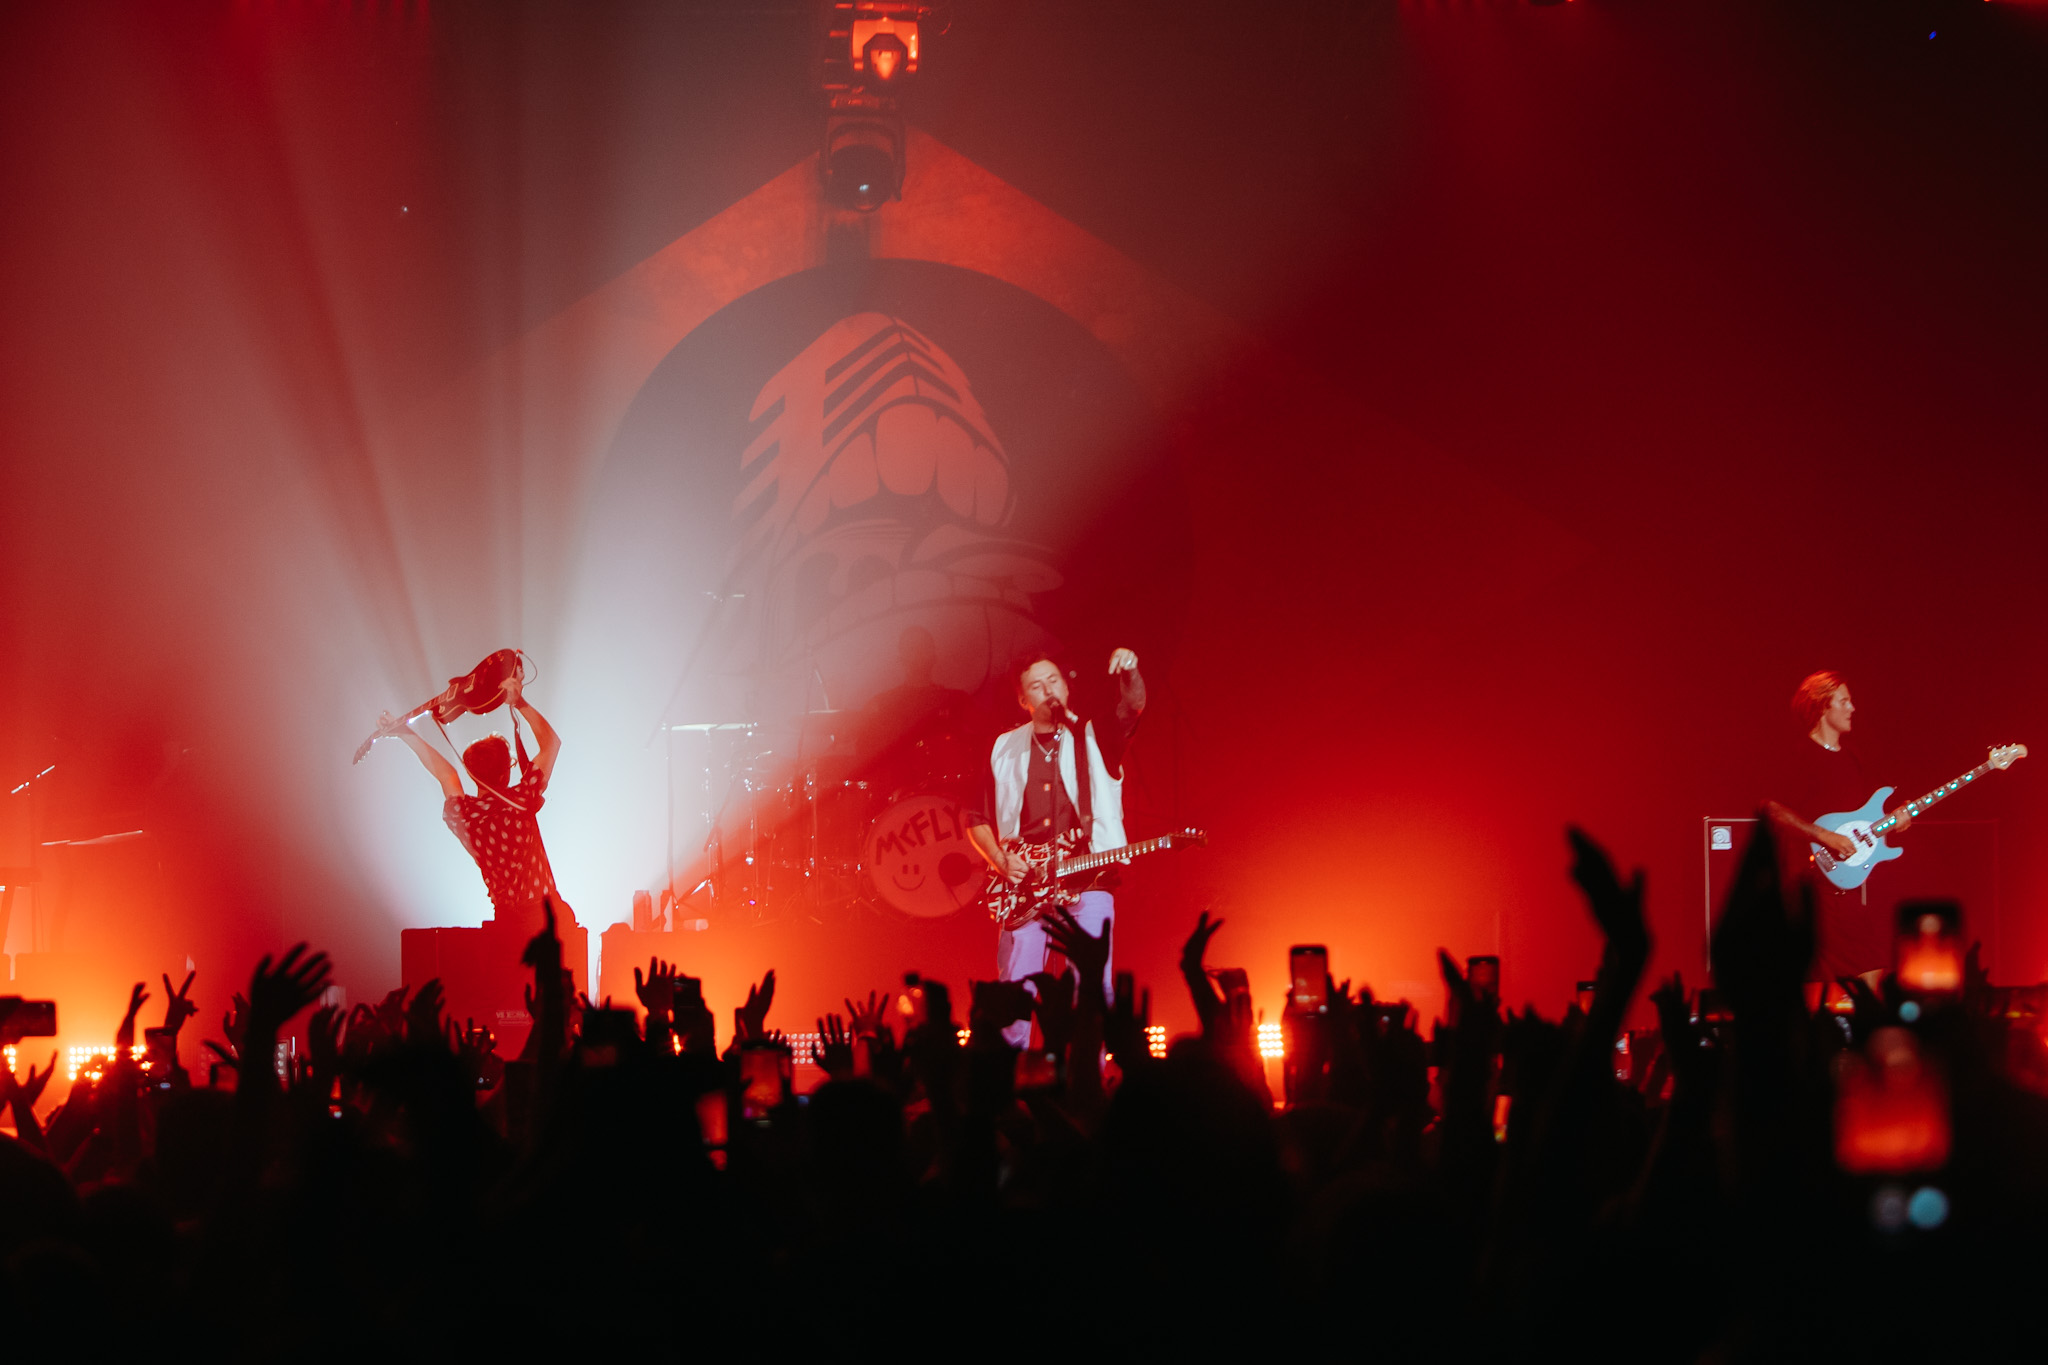 McFly em show em São Paulo. Foto mostra o público, luzes vermelhas e os integrantes da banda ao fundo